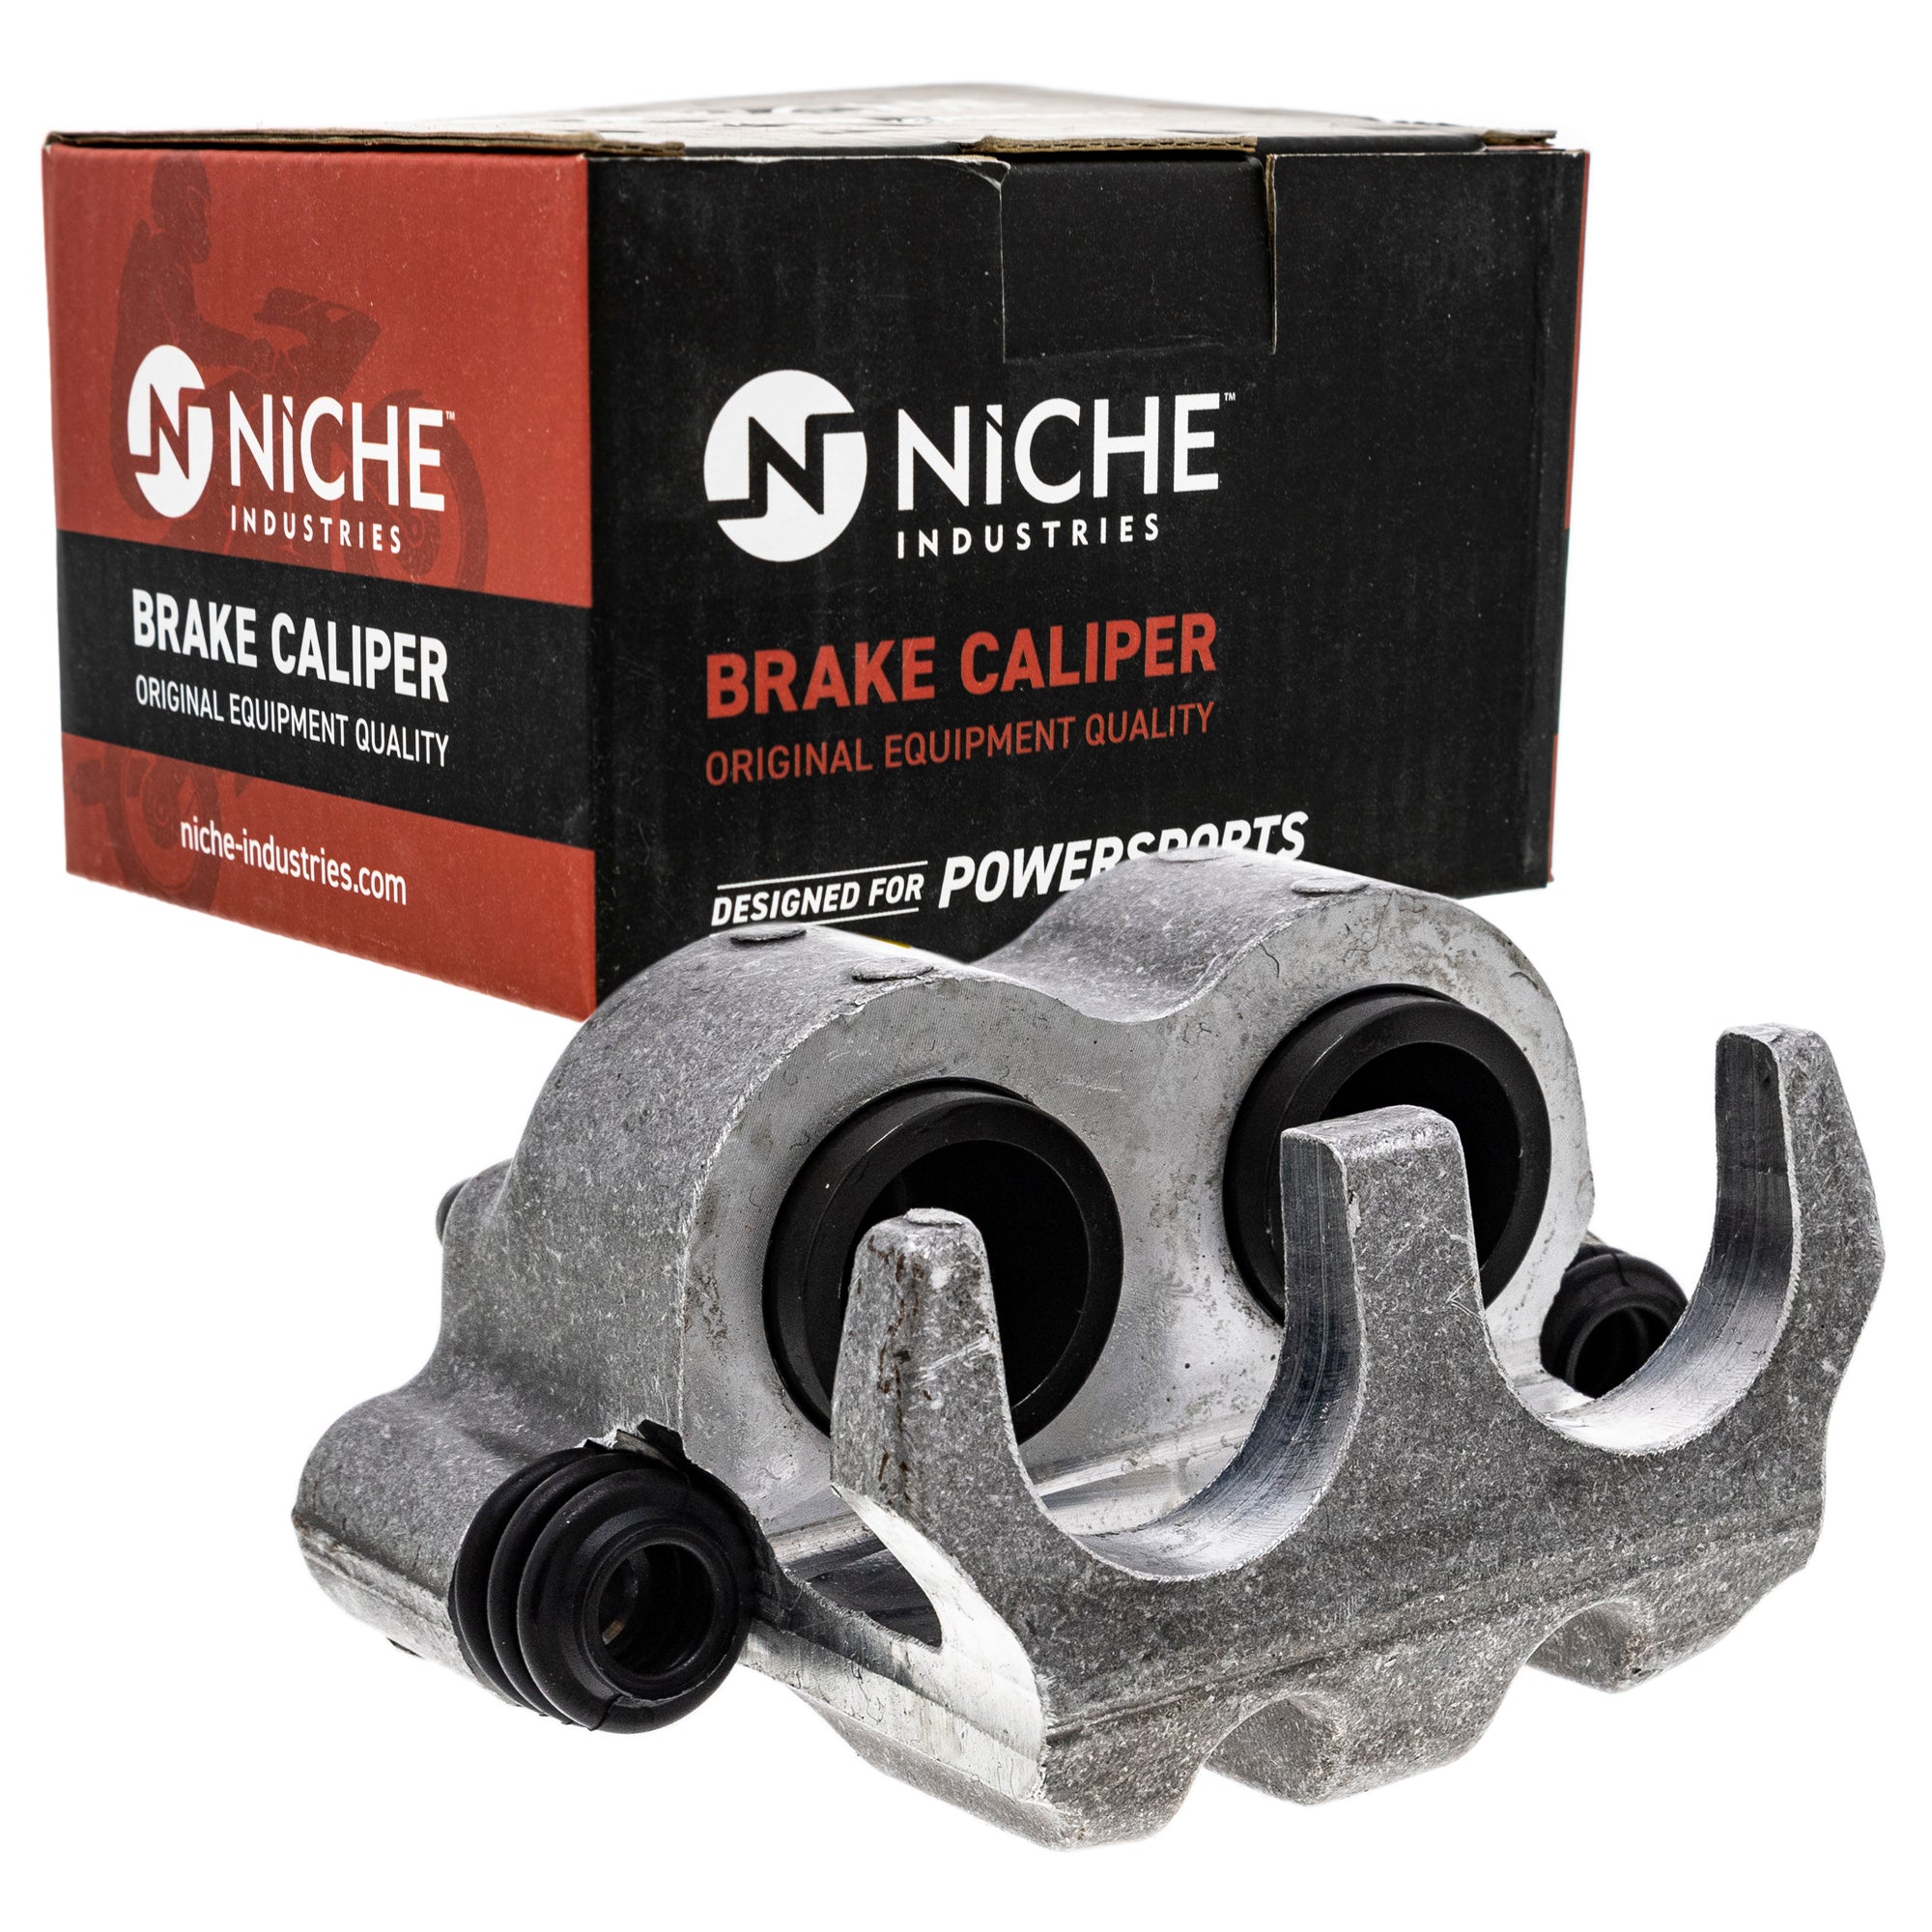 NICHE MK1001277 Brake Caliper Kit